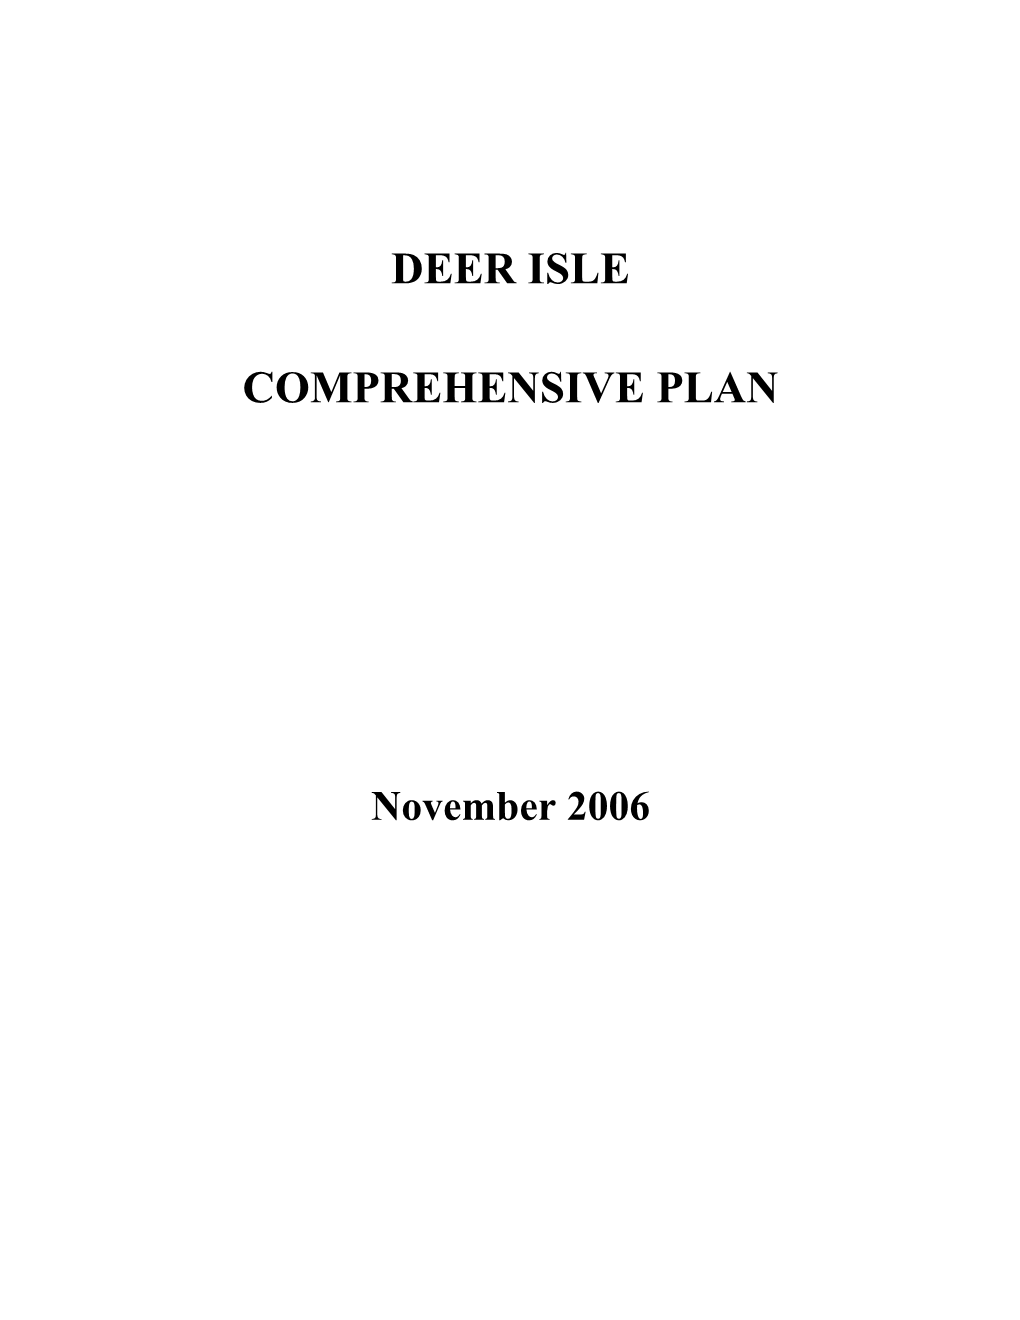 Deer Isle Comprehensive Plan November 2006